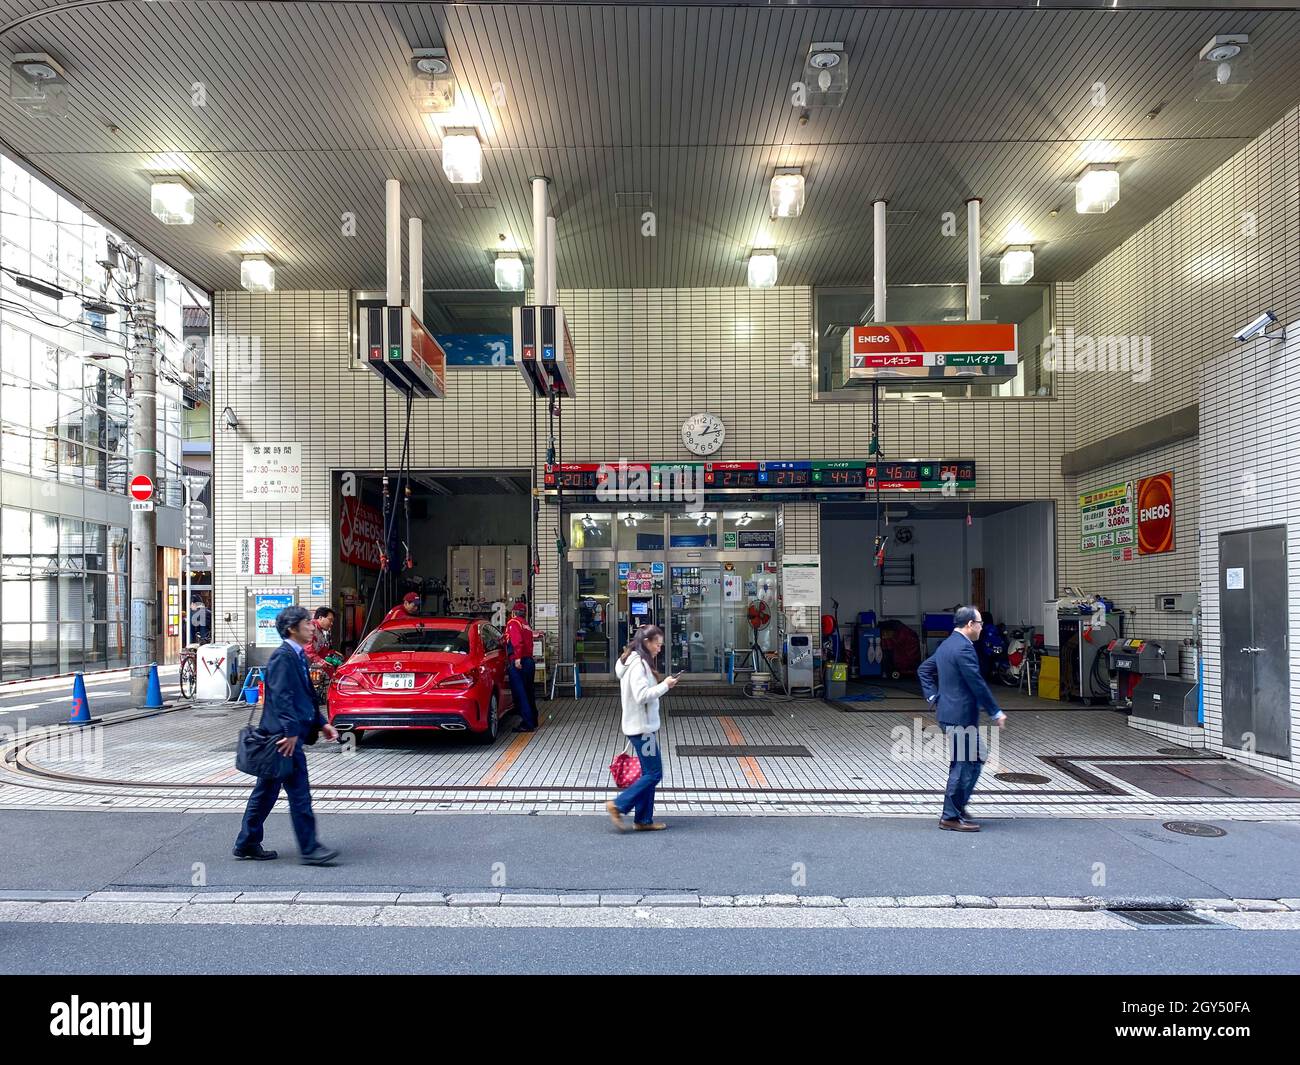 Tokyo, Giappone - 20 novembre 2019: Stazione di benzina di Eneos a Tokyo Foto Stock